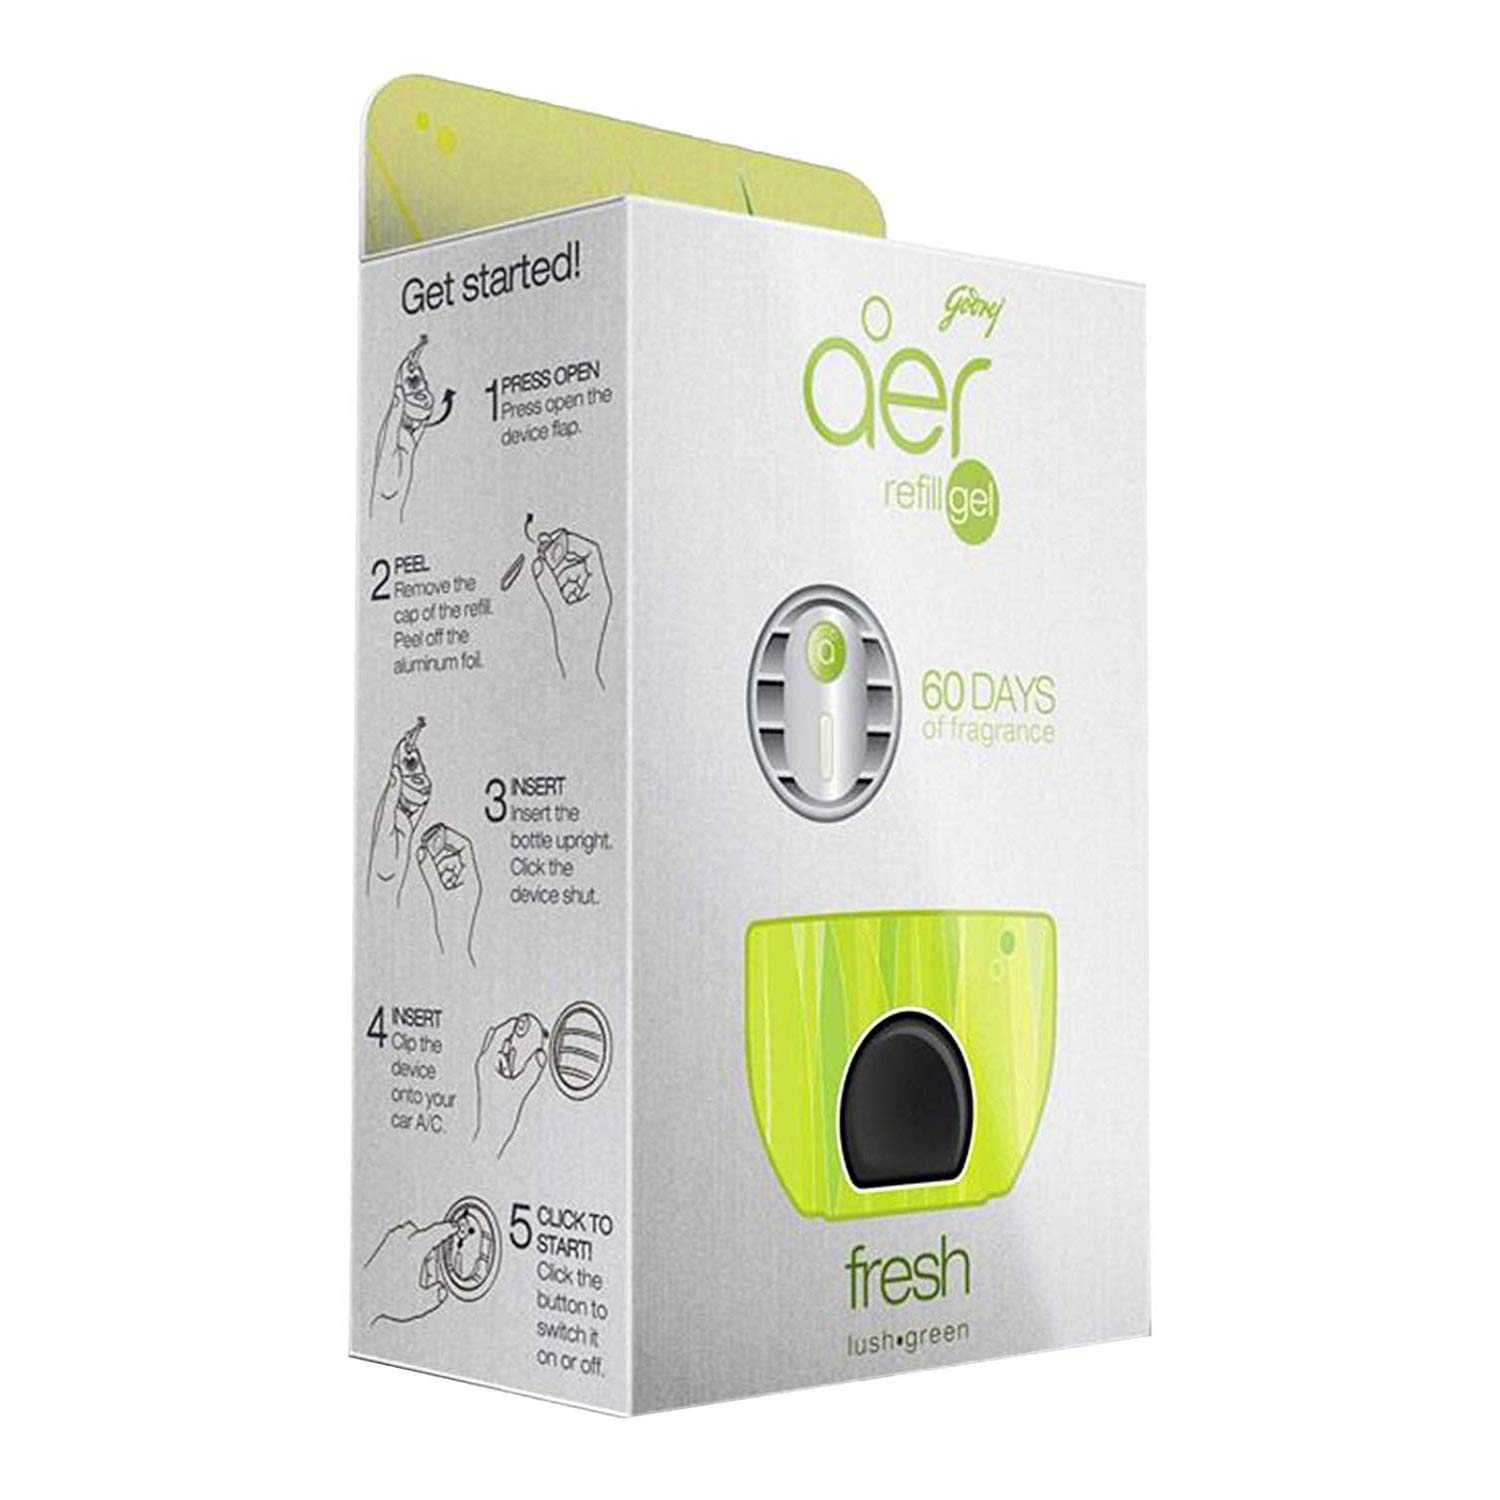 Godrej Aer Click Gel Fresh Lush Green Car Freshener (Refill) |10 gm